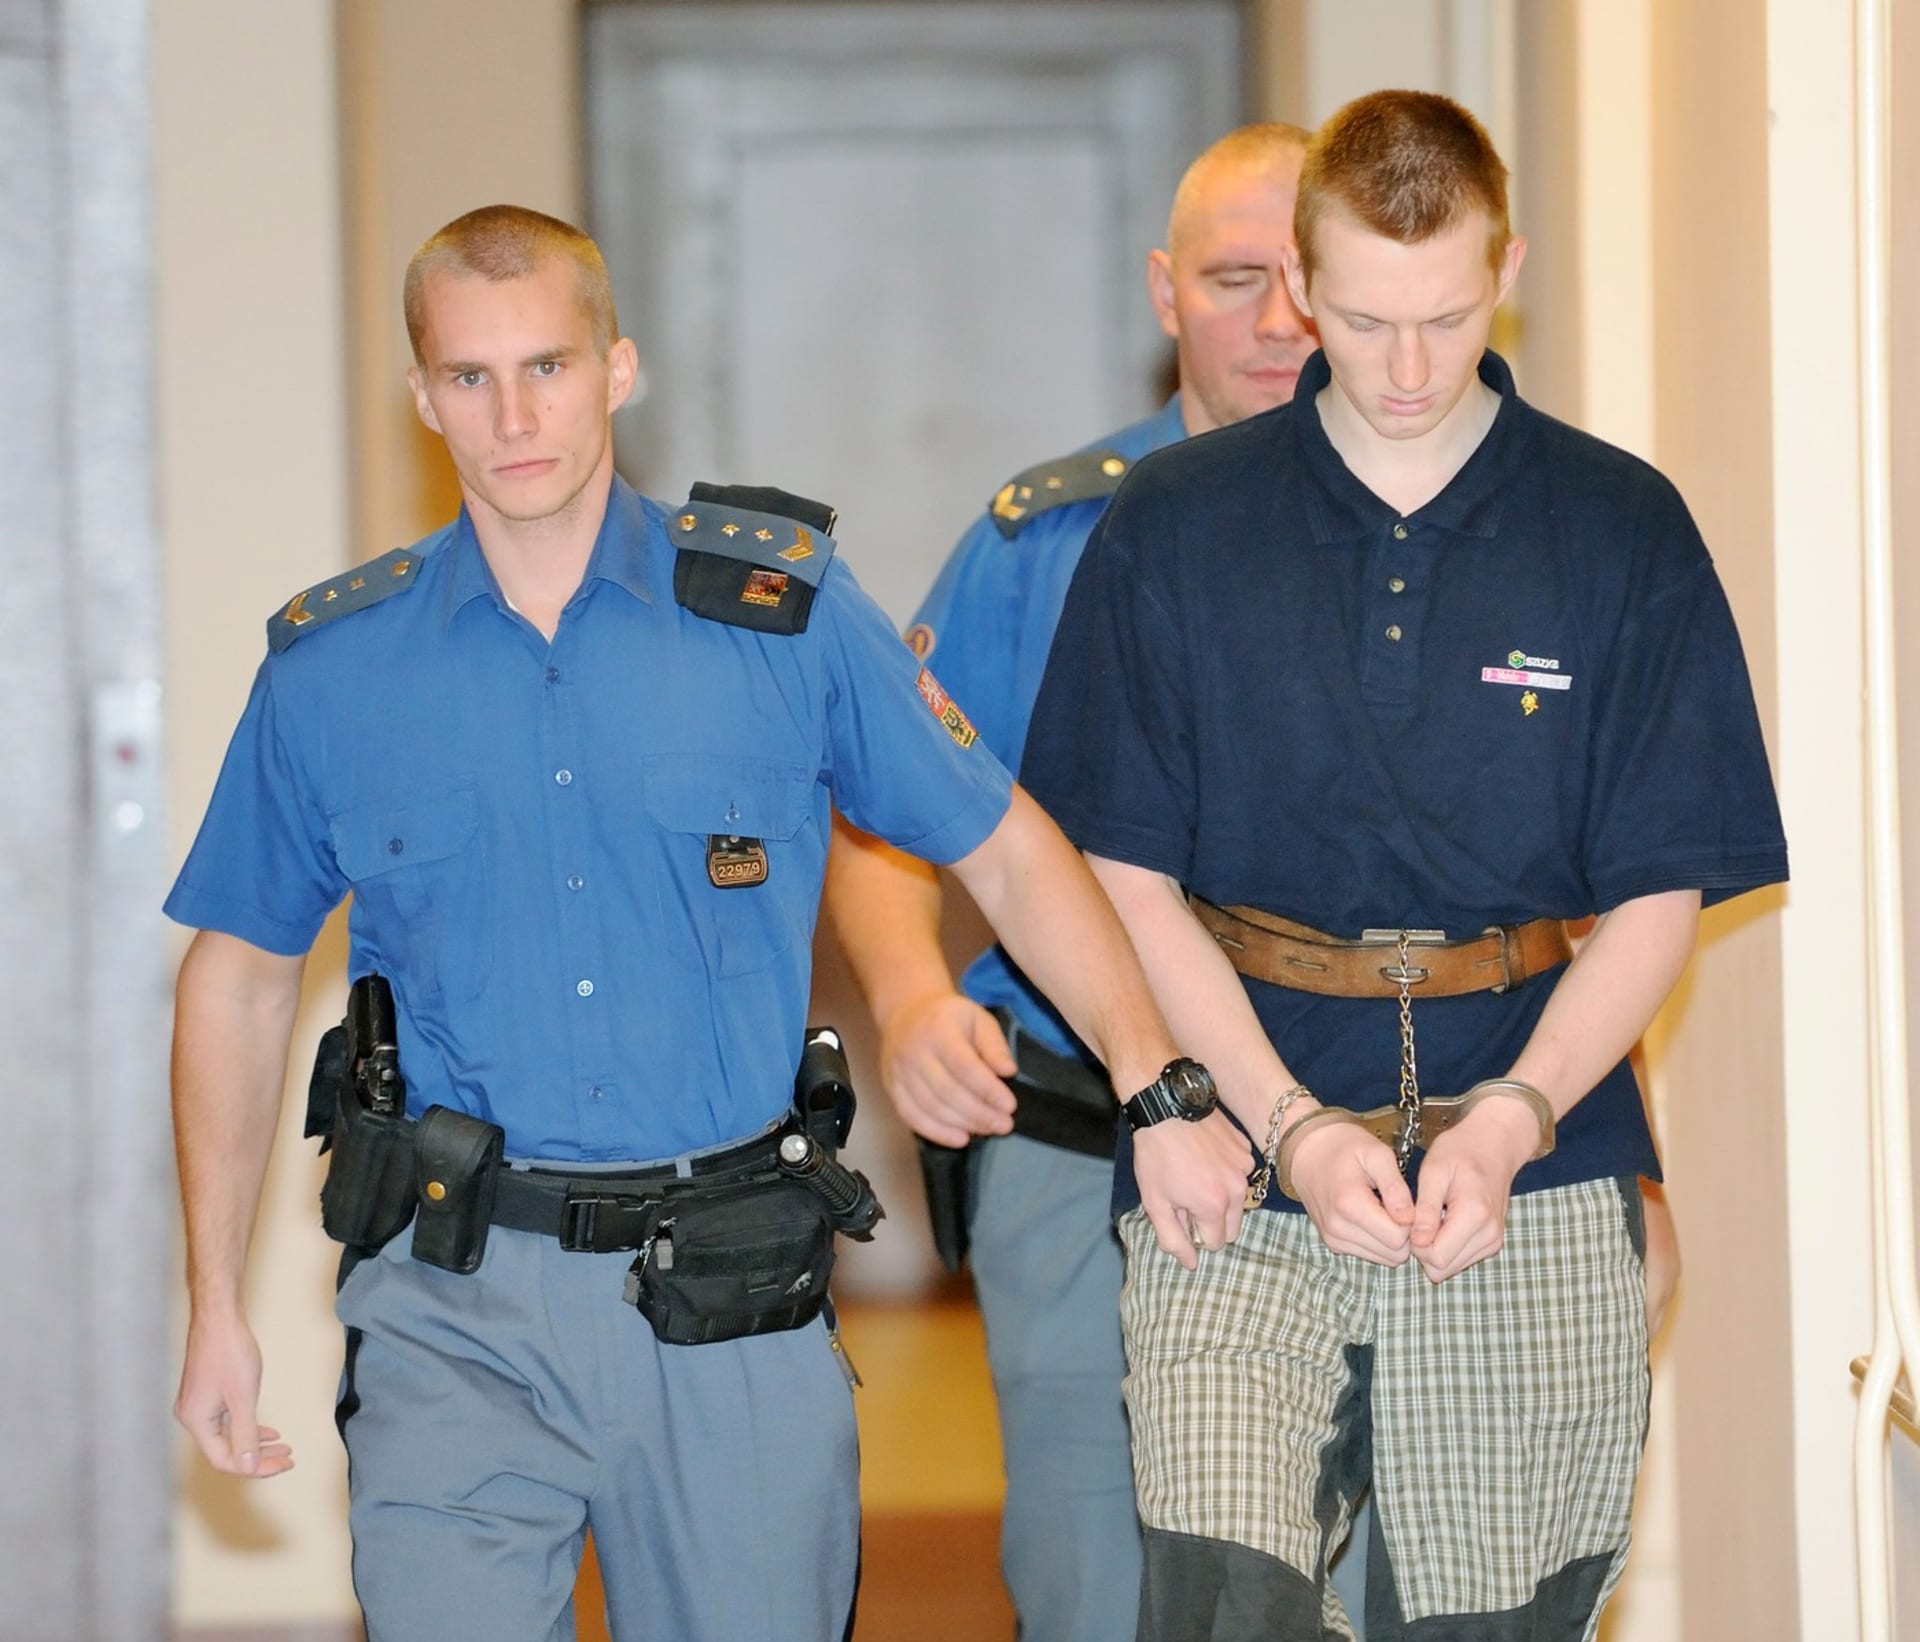 Krajský soud v Hradci Králové zahájil 22. listopadu 2012 hlavní líčení v případu Tomáše Víta obžalovaného z únorové vraždy dvou seniorů v Trutnově.